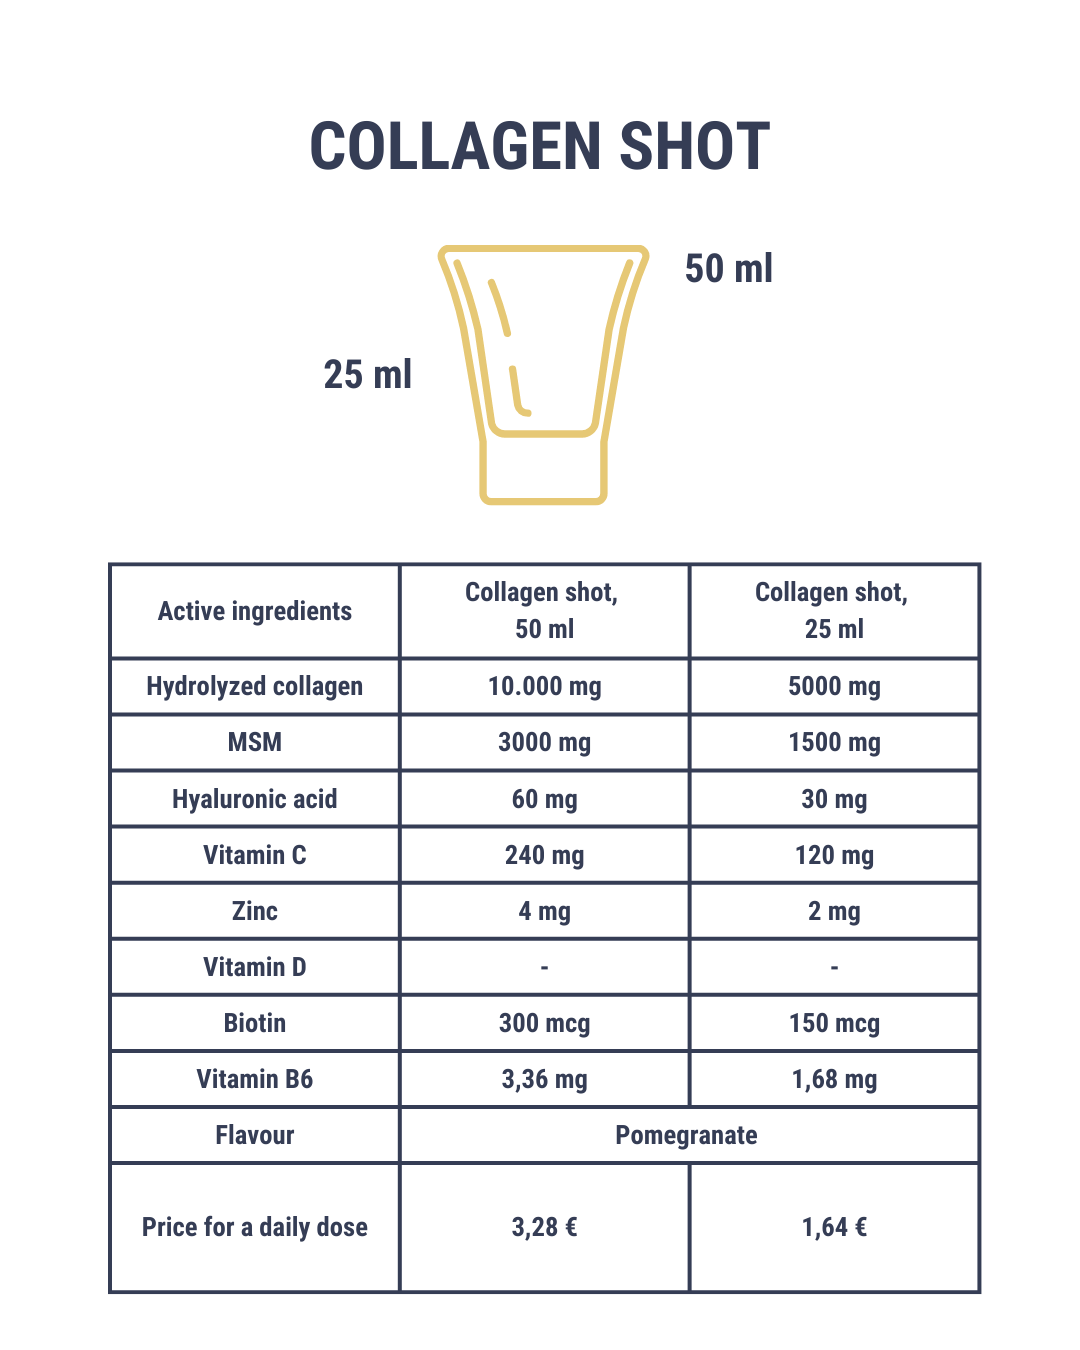 Collagen shot